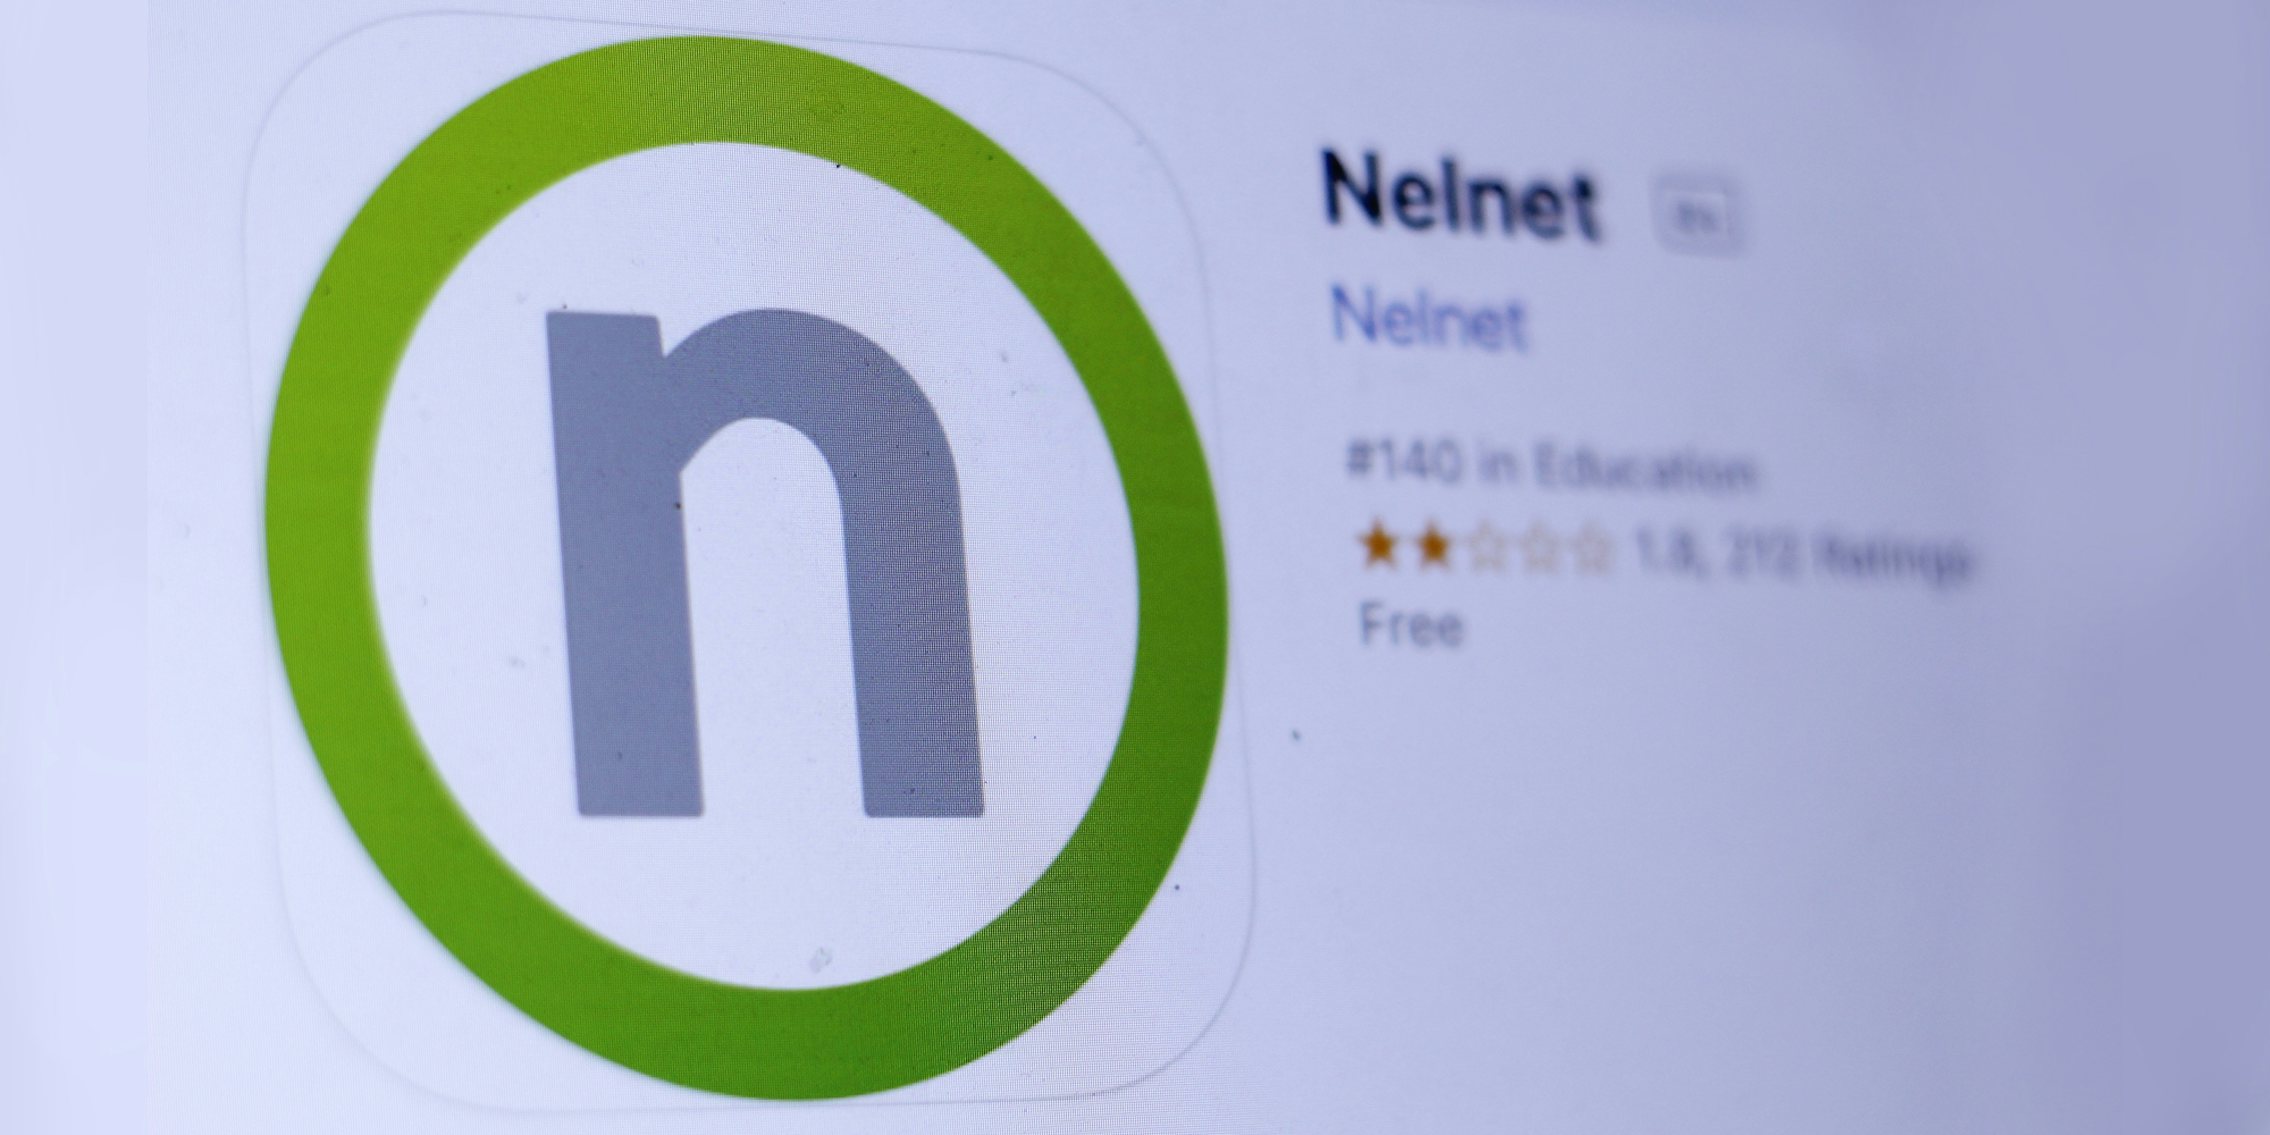 Nelnet app 'Nelnet' in appstore on screen